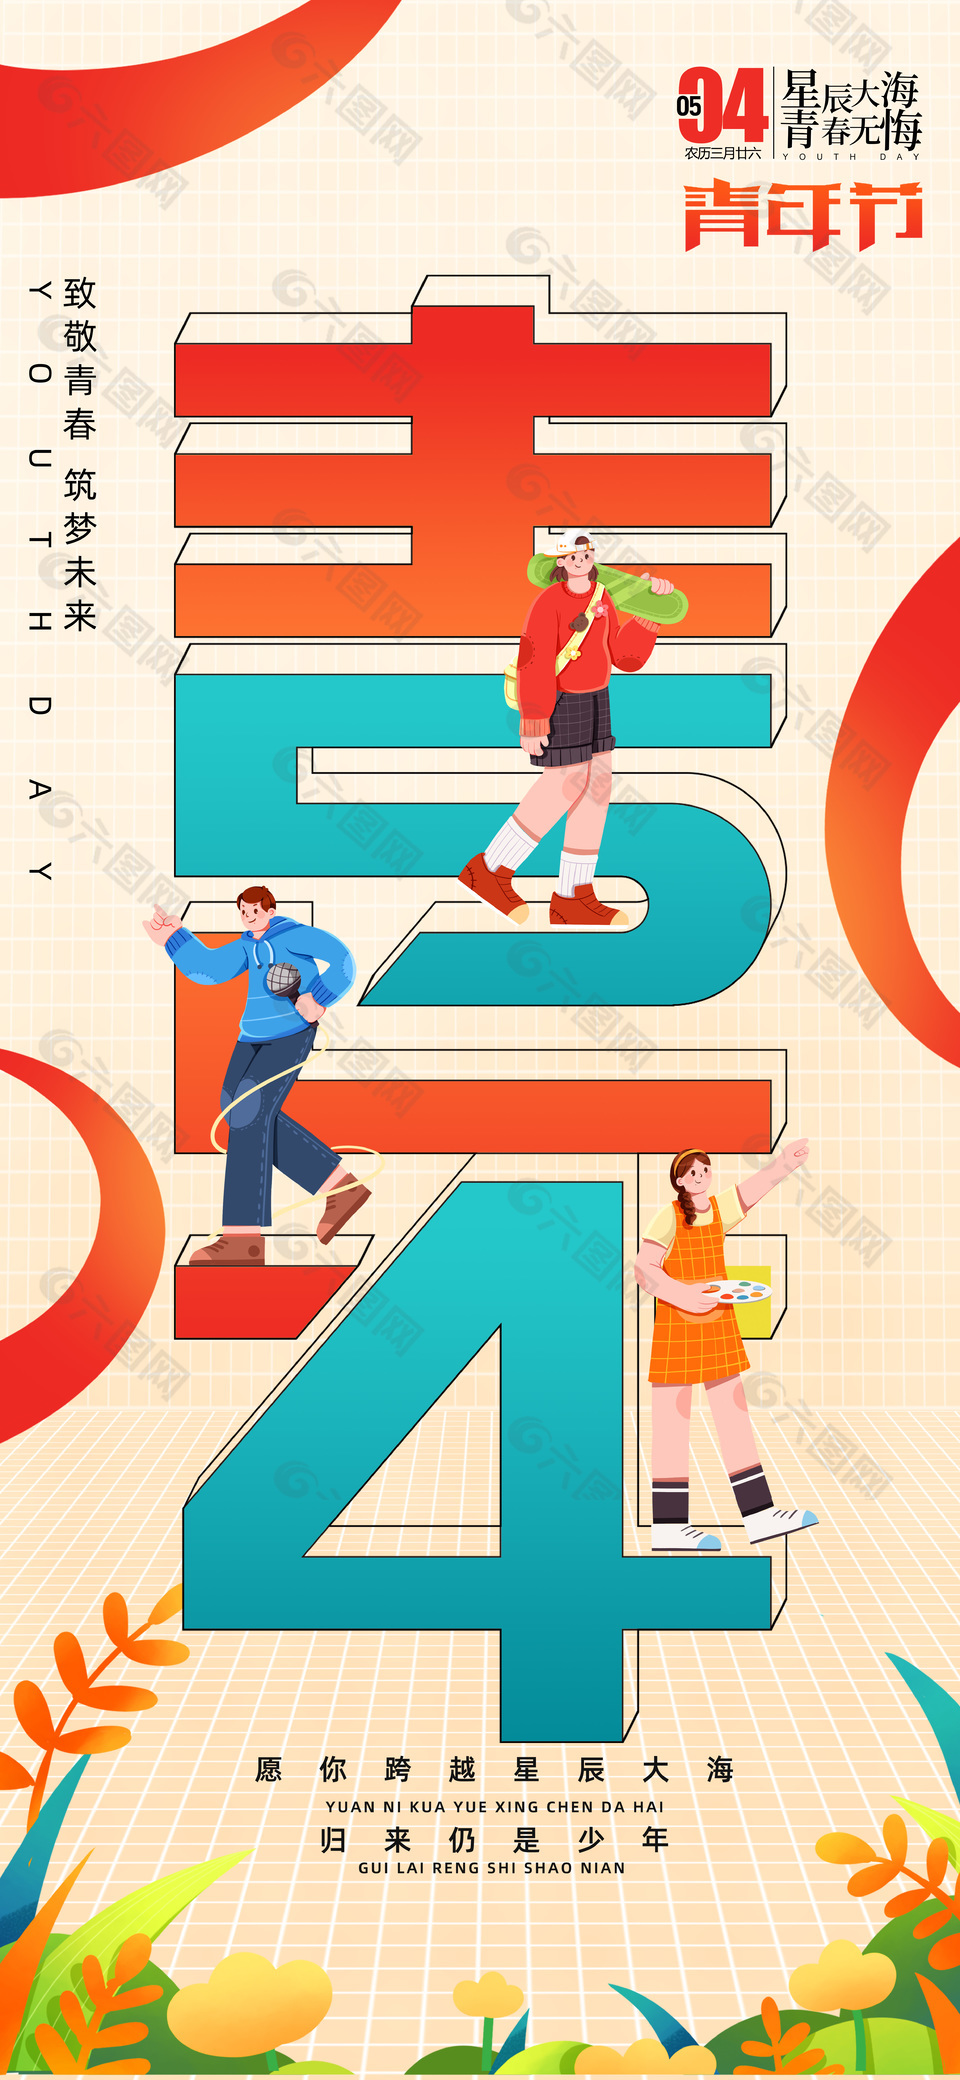 致敬青春54青年节简约插画海报